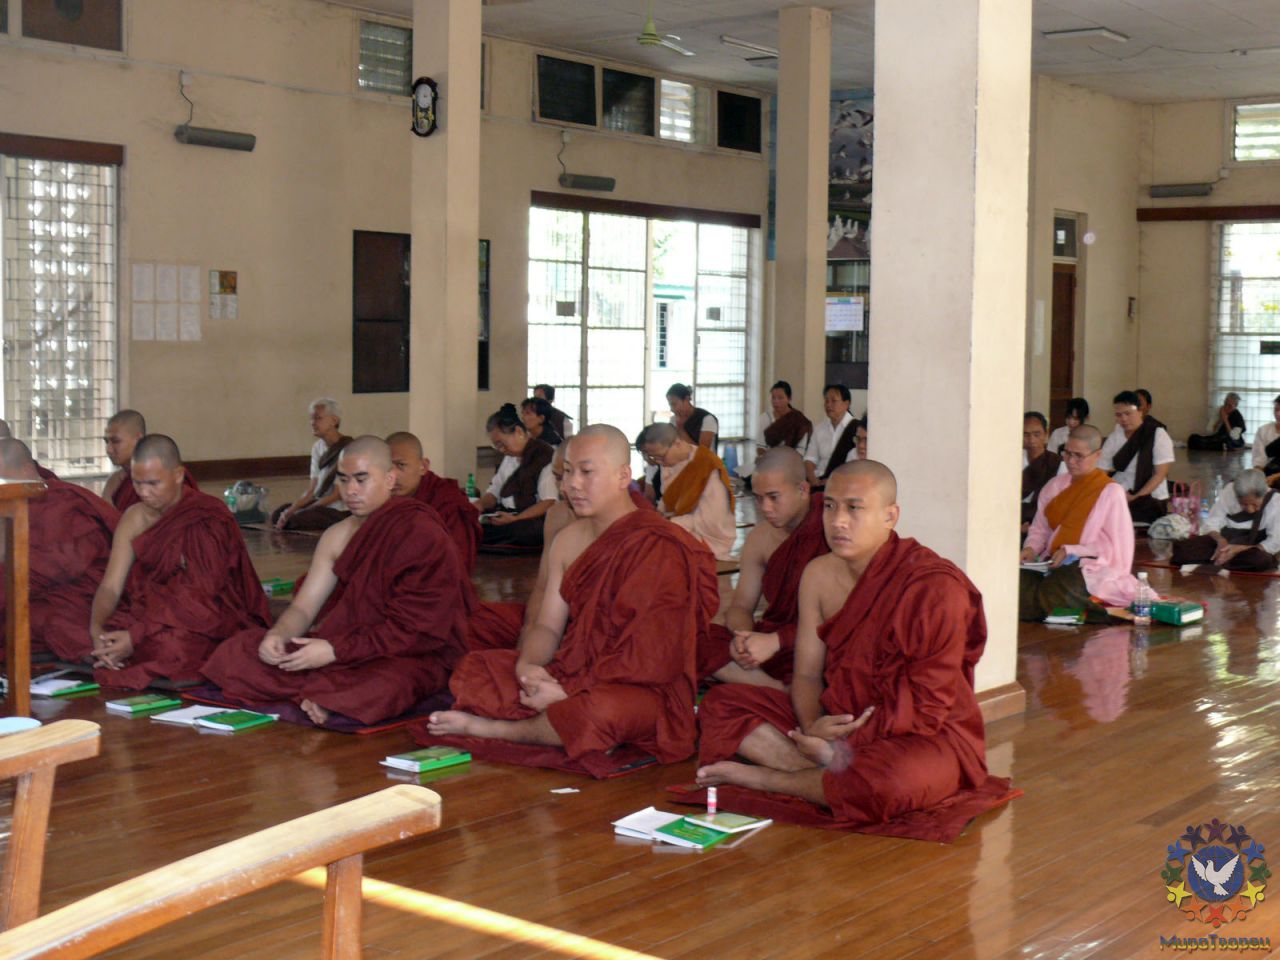 в монастыре преподают техники медитации - МЬЯНМА, февраль 2011